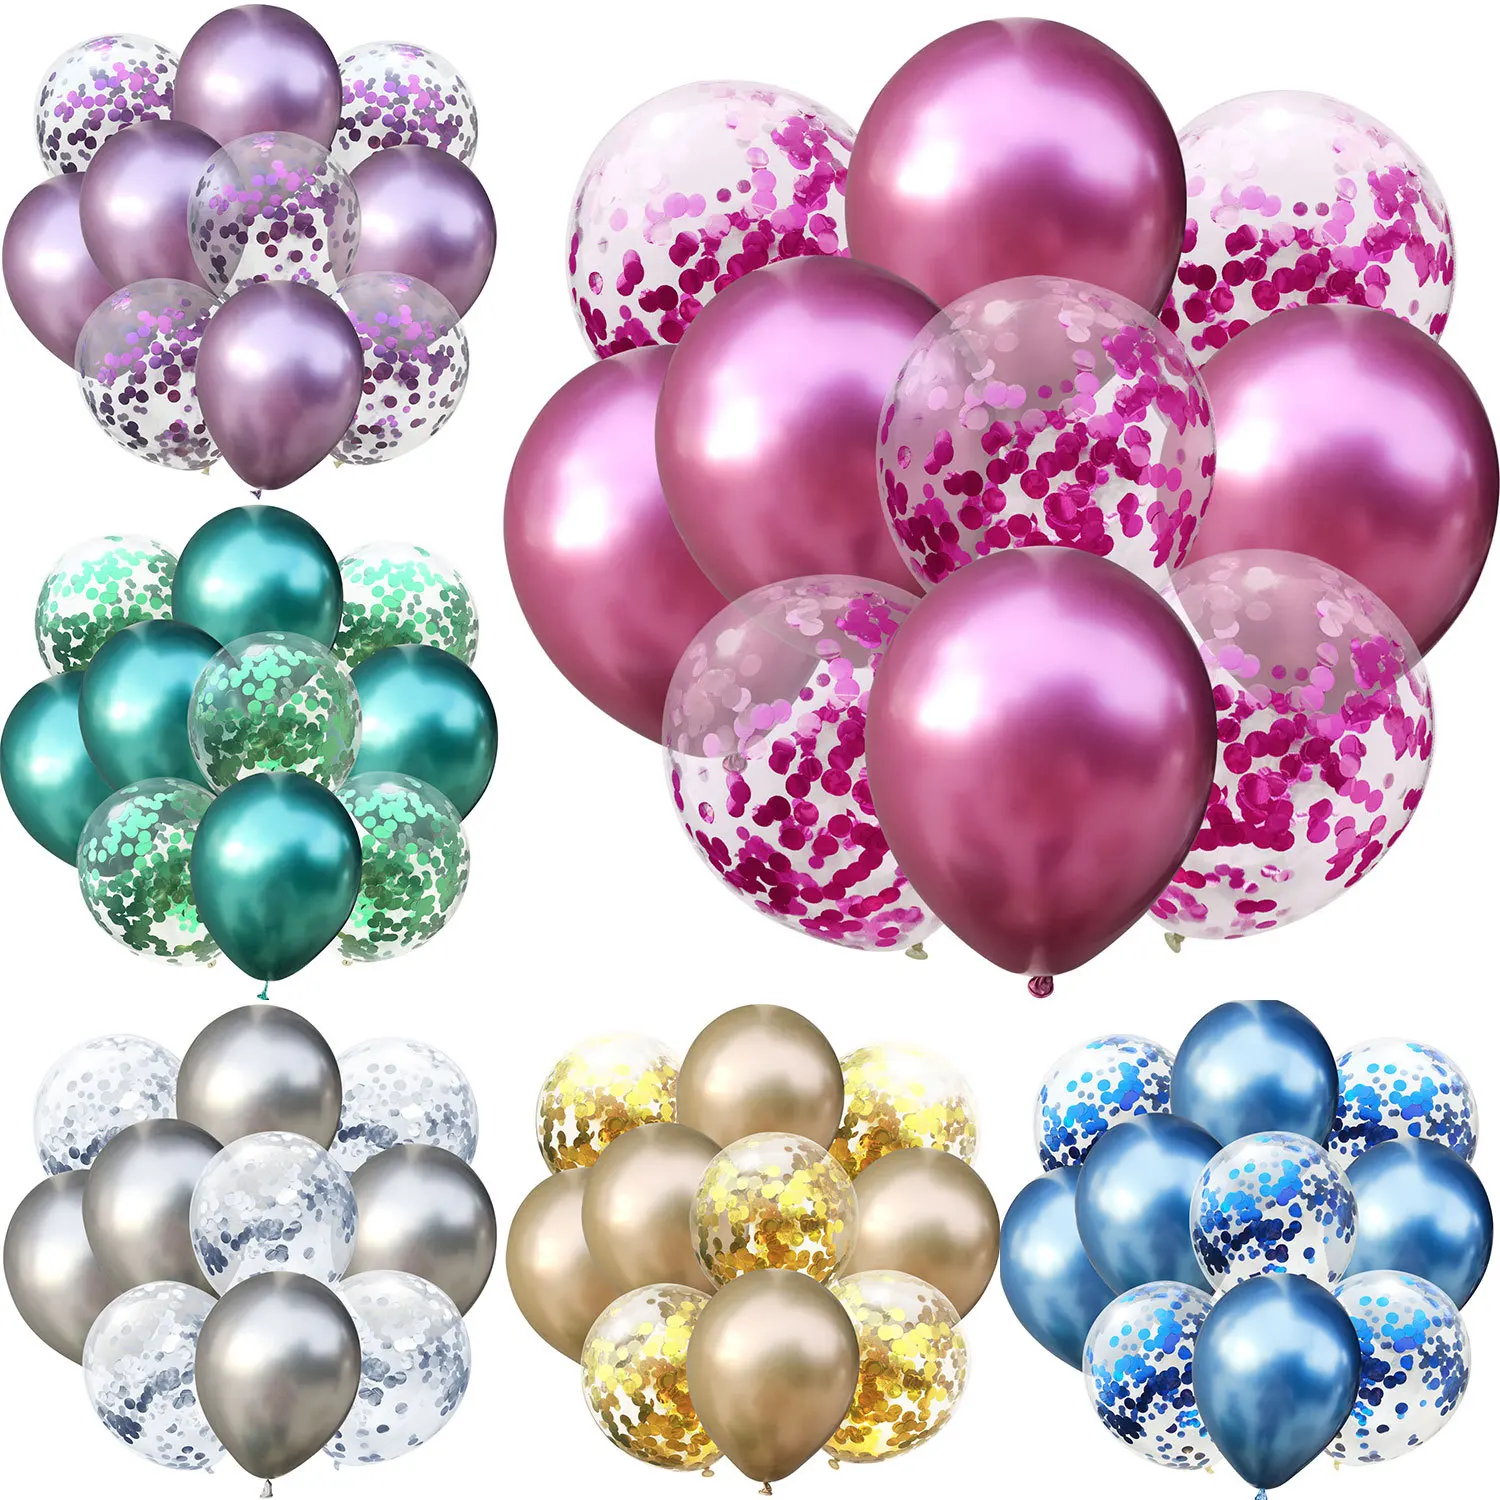 ZLJQ 10 шт. разноцветные конфетти воздушные шары на день рождения украшения для детей и взрослых металлический шар воздушный шар на день рождения прозрачный шар